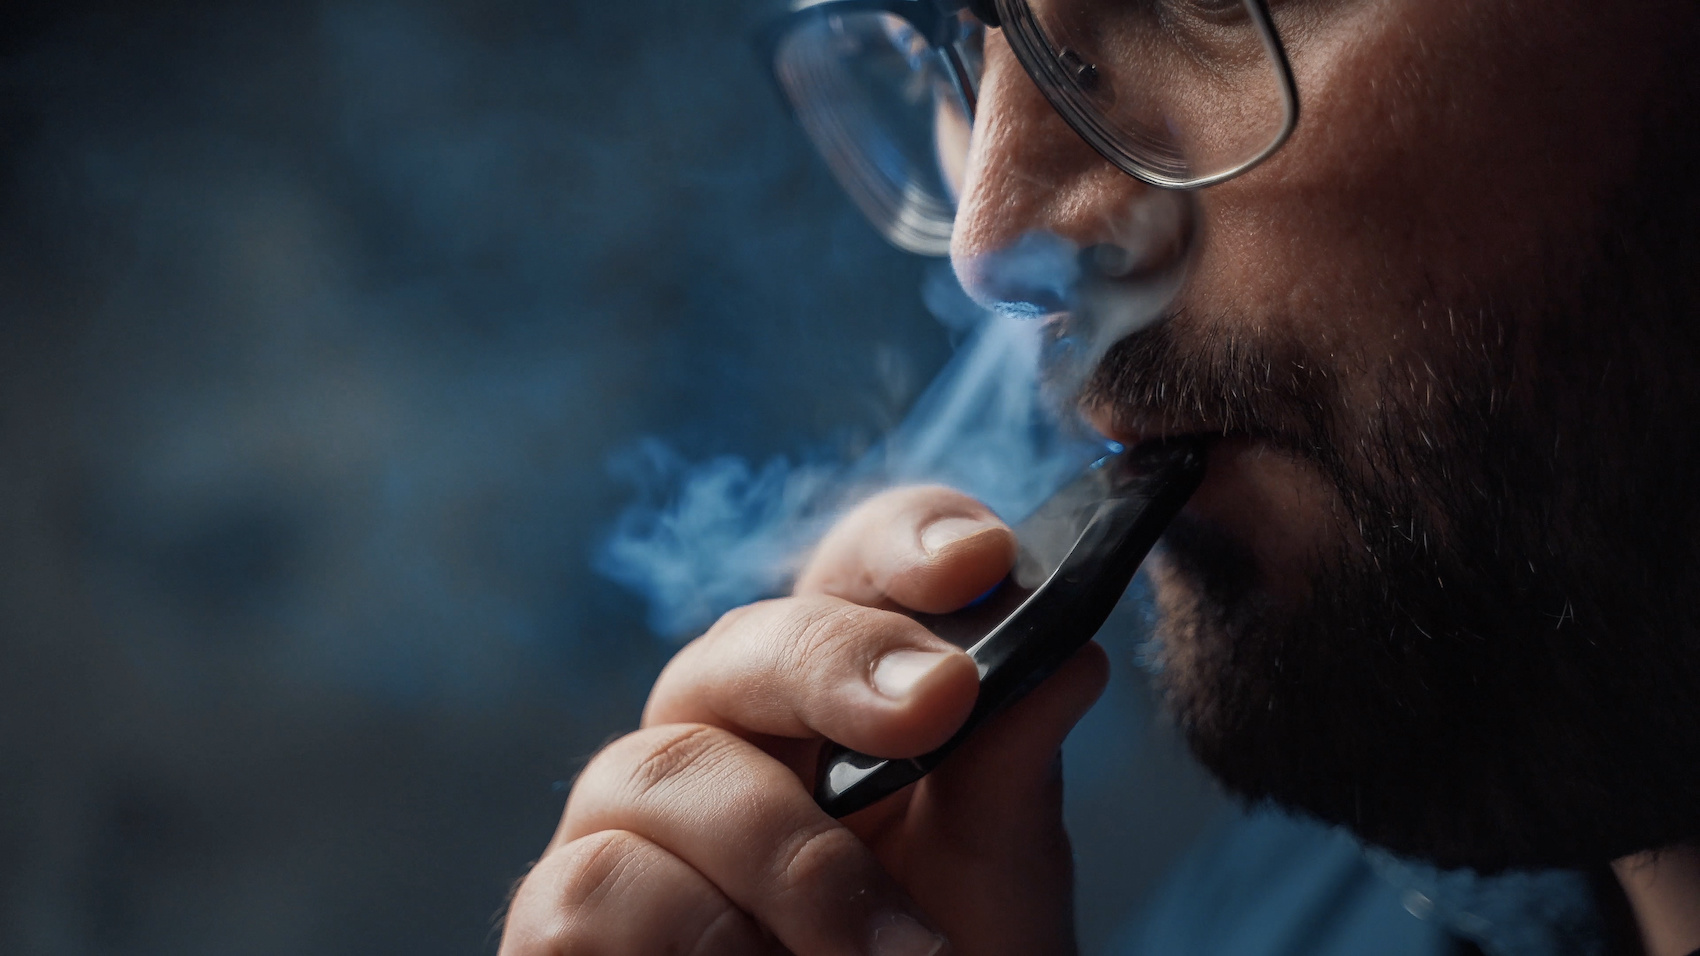 Inhaling nicotine vapor from an e-cig